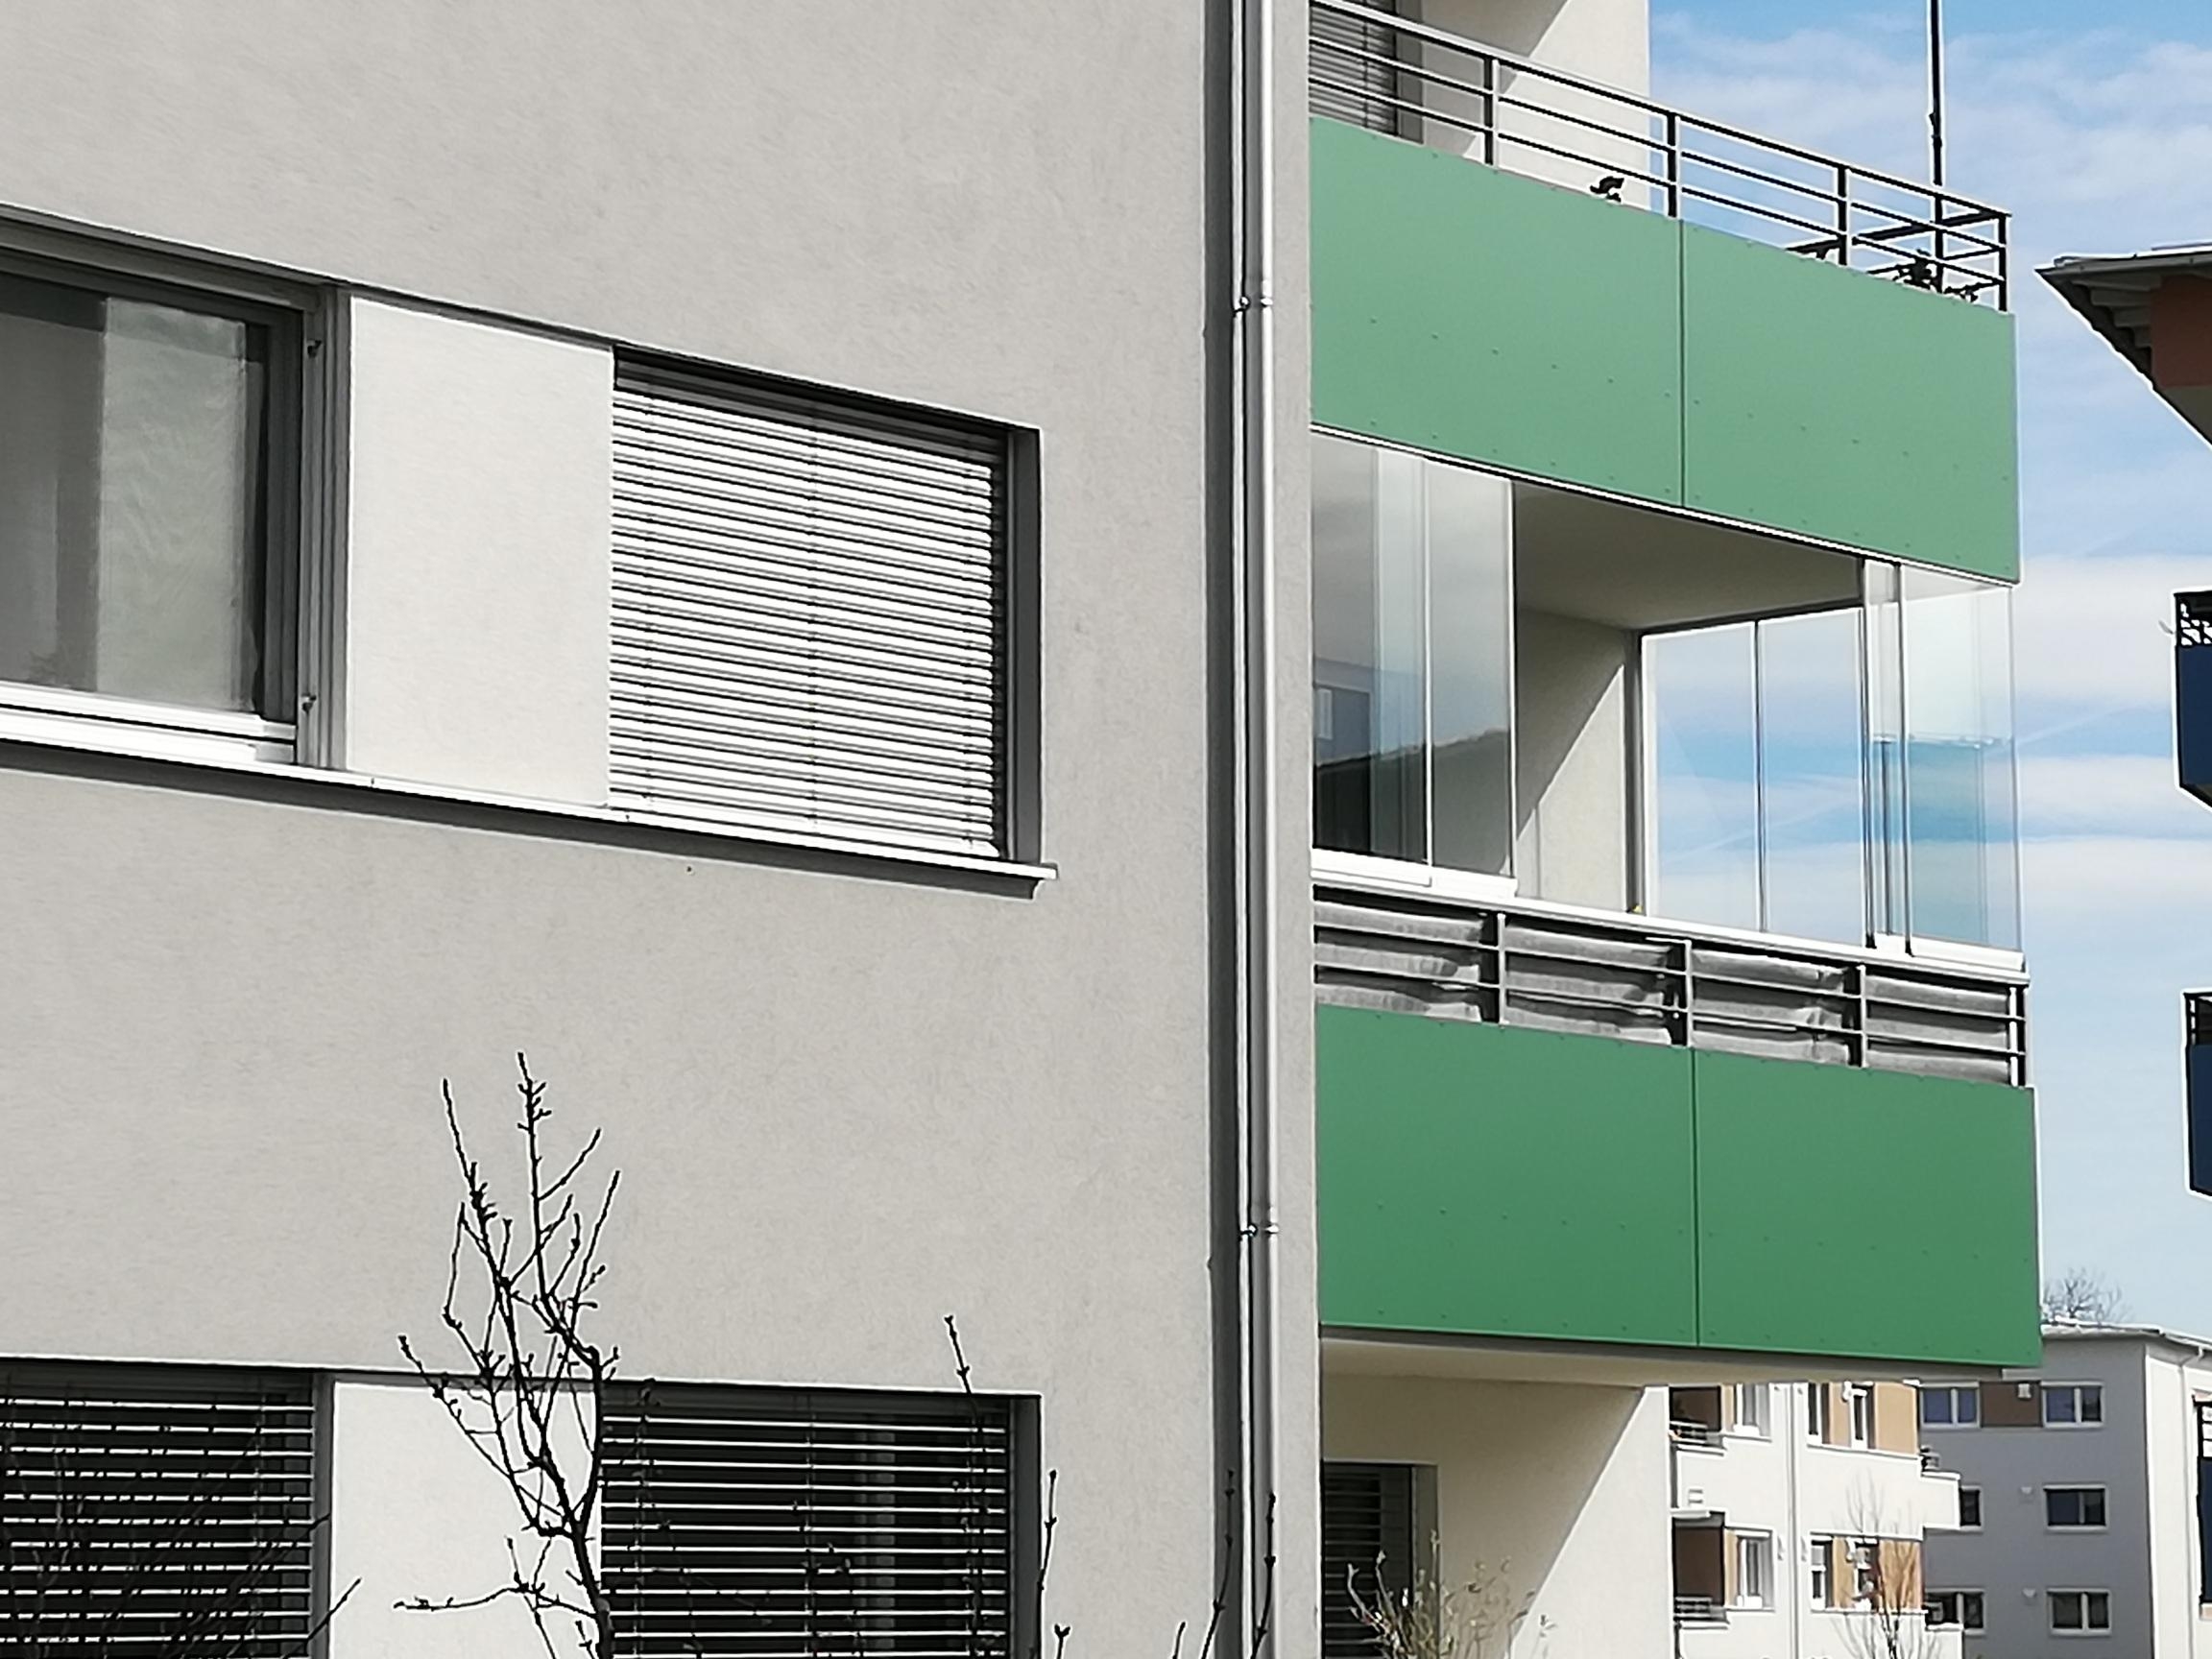 Neue Balkonverglasung für Wohnhaus schützt vor Wind, Lärm und Schmutz! Die Schiebetüren können einfach geöffnet werden!